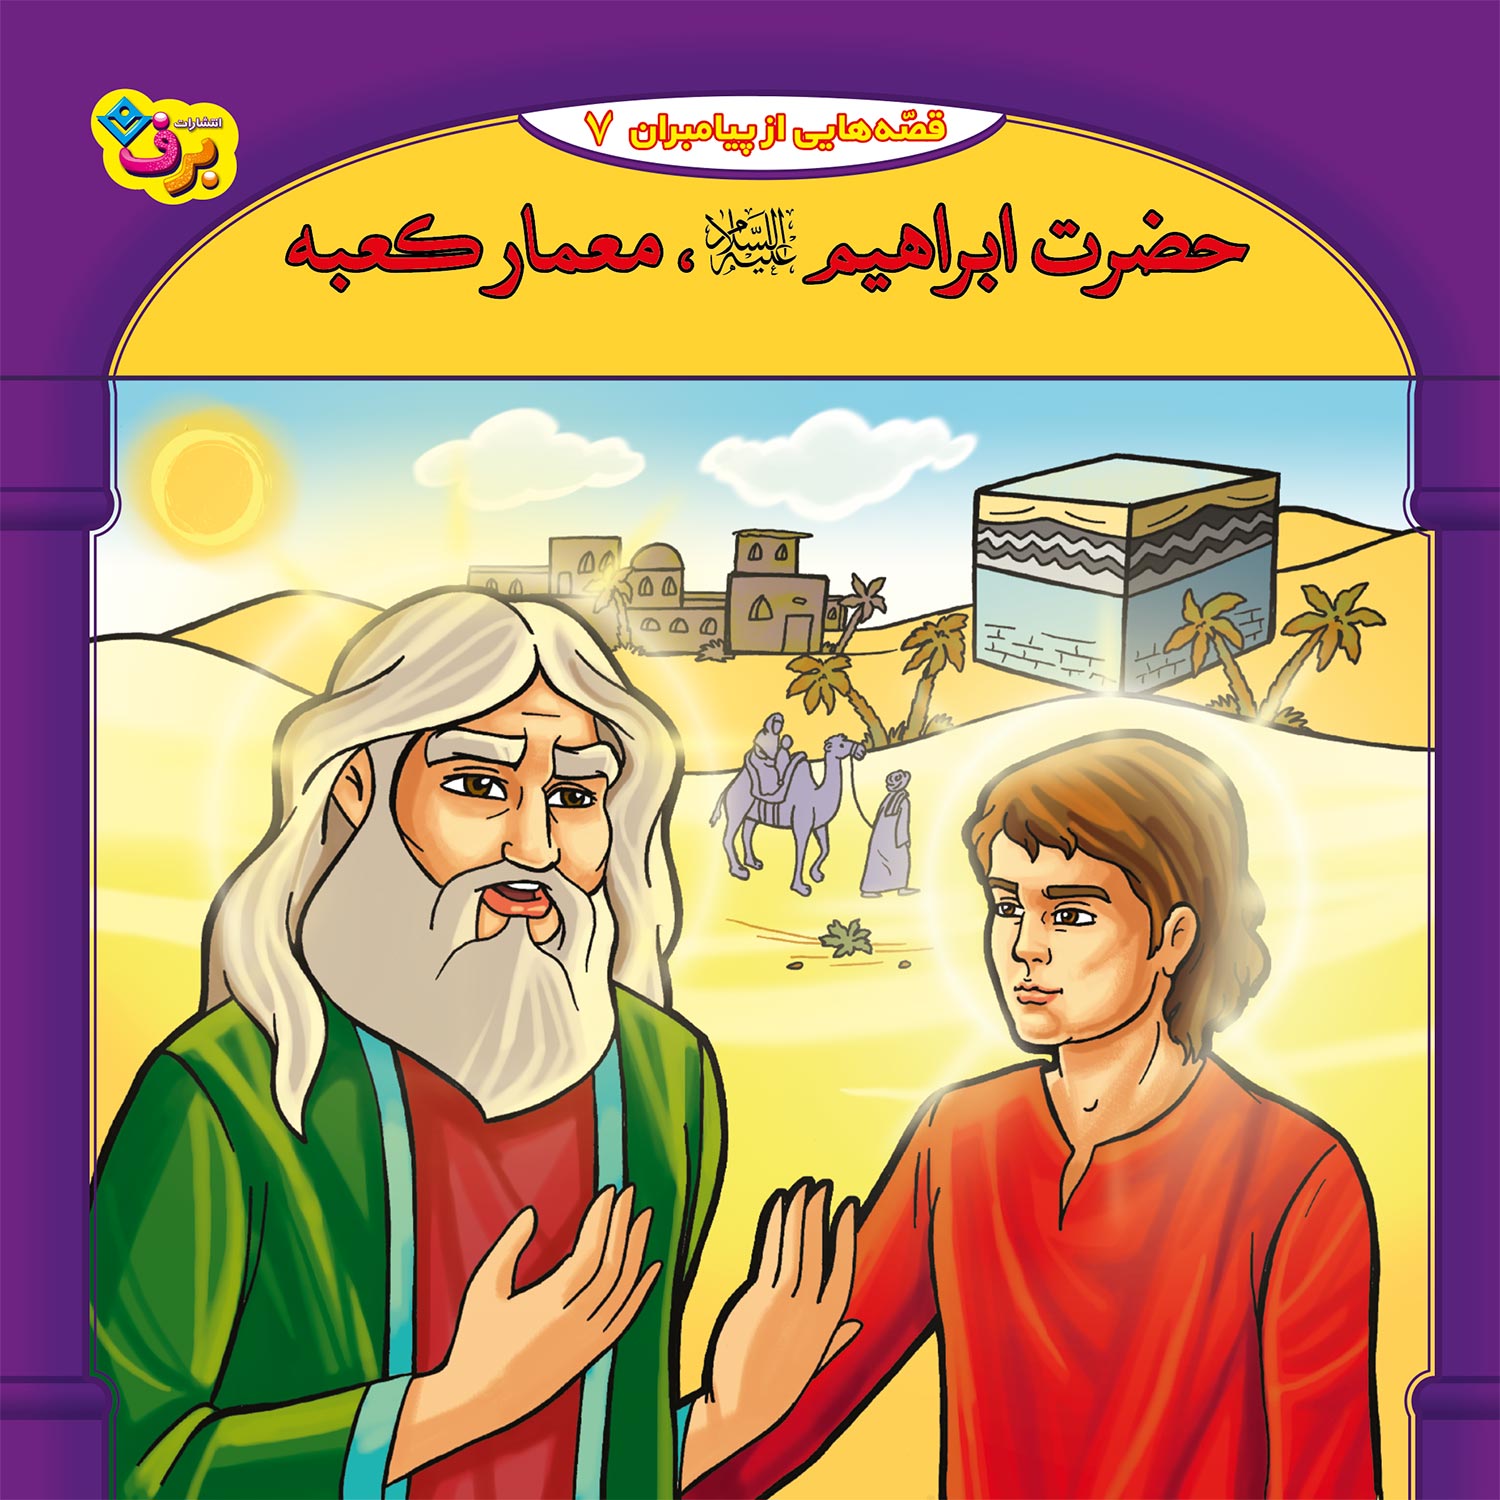  کتاب قصه هایی از پیامبران 7 حضرت ابراهیم (ع) معمار کعبه اثر فاطمه قدیانی انتشارات برف